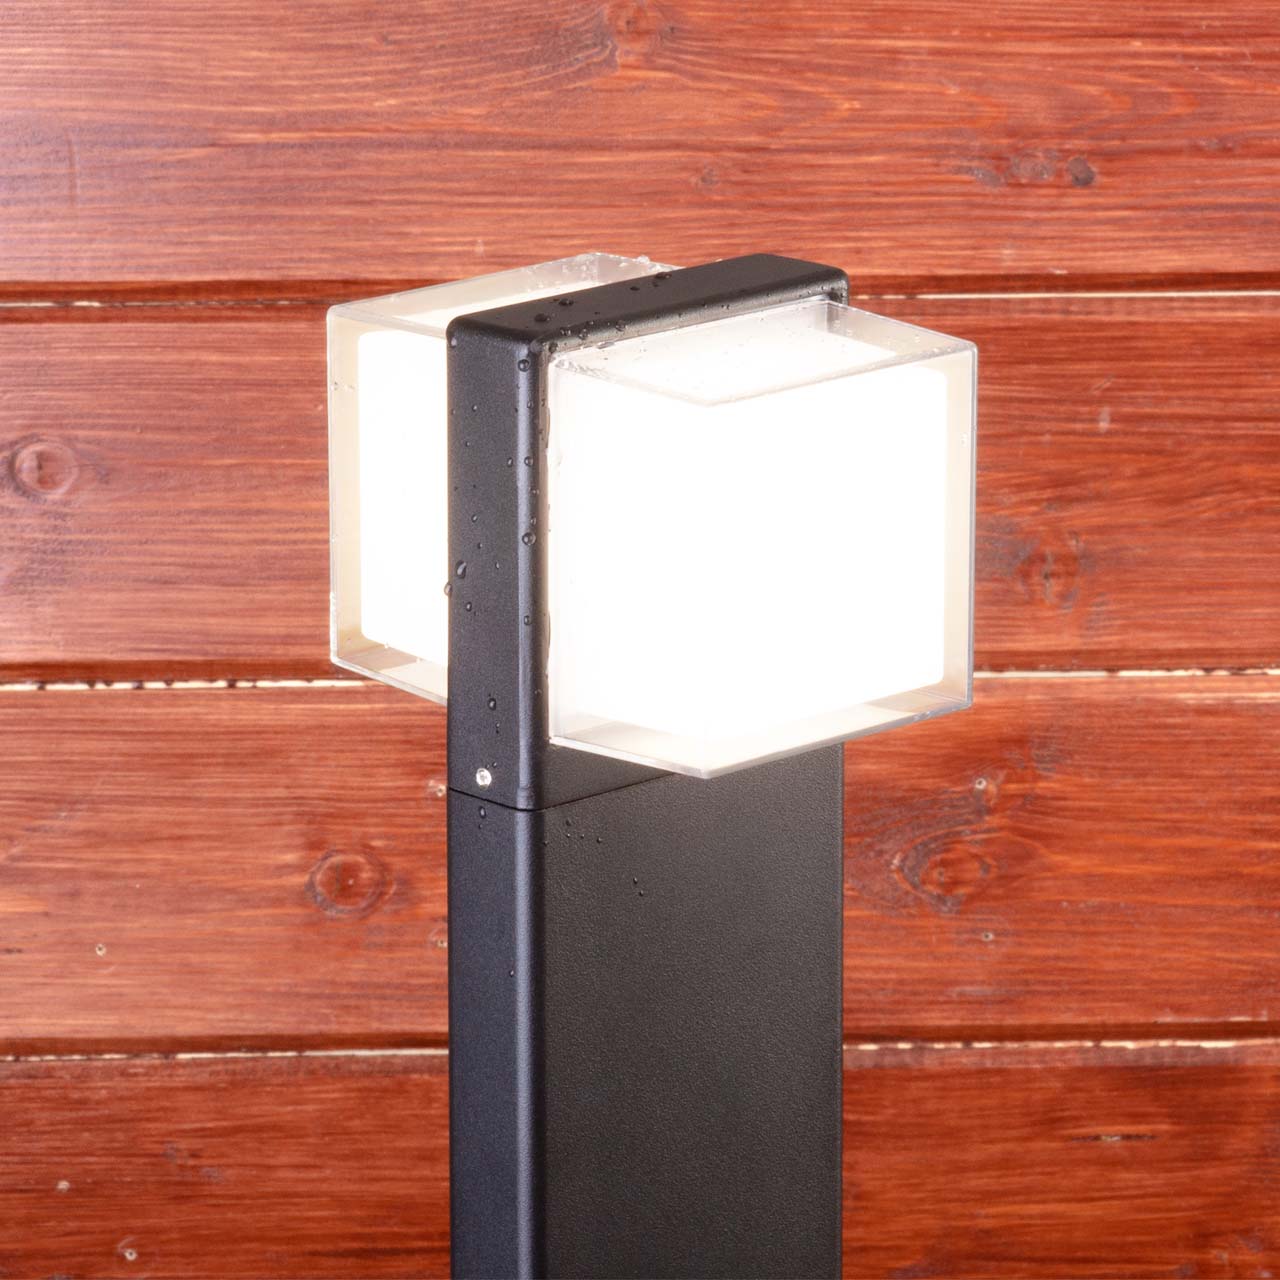 Садовый светильник Elektrostandard 1520 TECHNO LED Maul чёрный